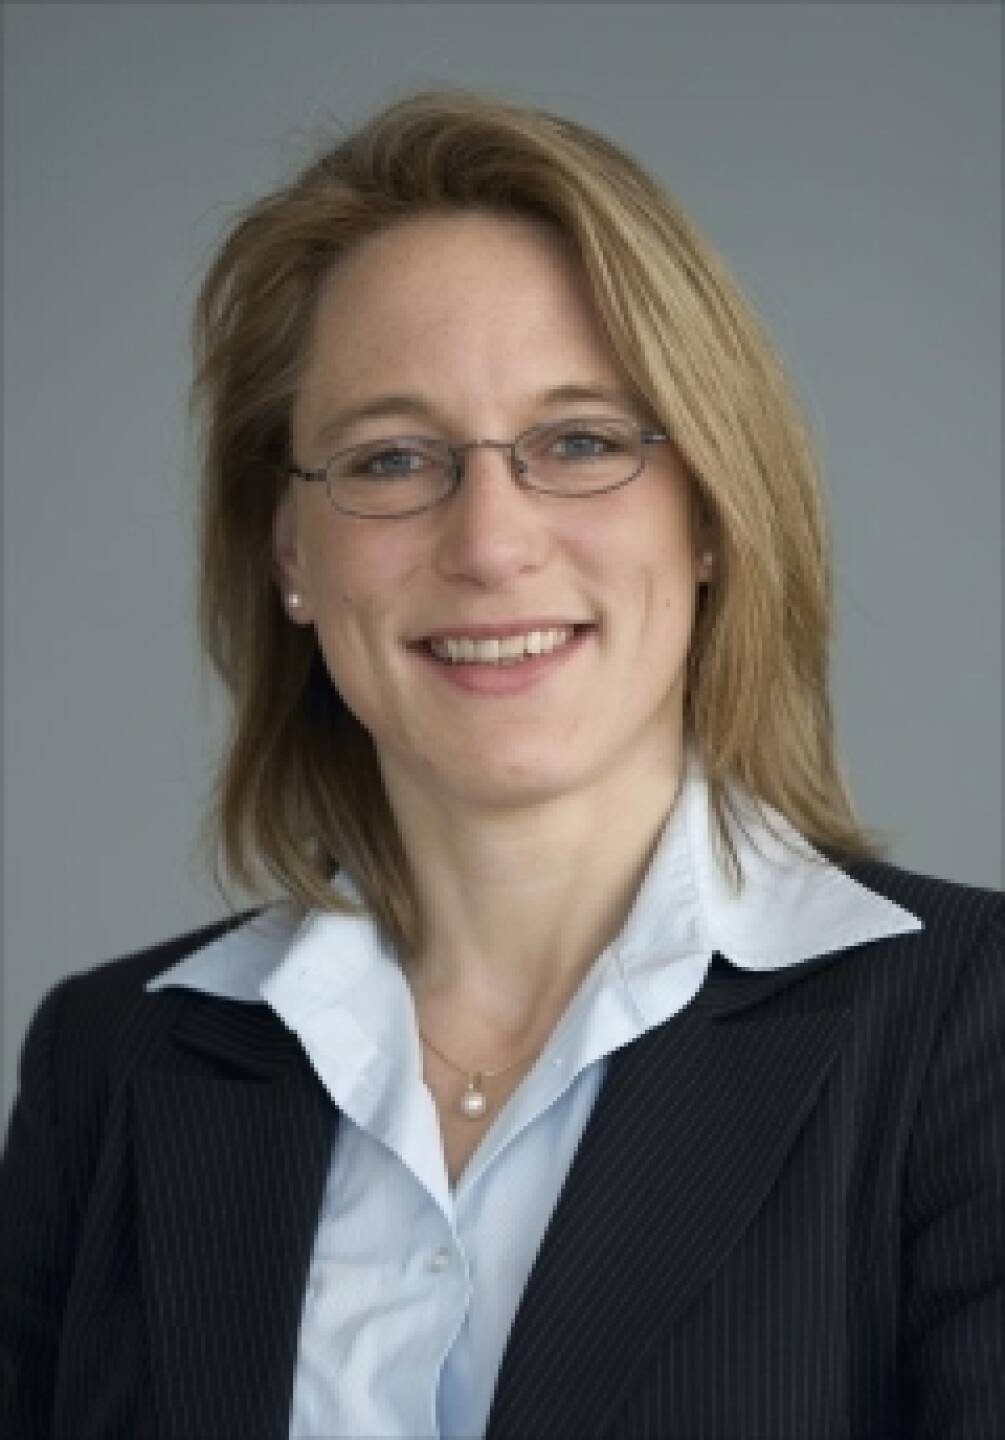 Daniela Hofmann, DZ Bank (16.Juli) - finanzmarktfoto.at wünscht alles Gute!